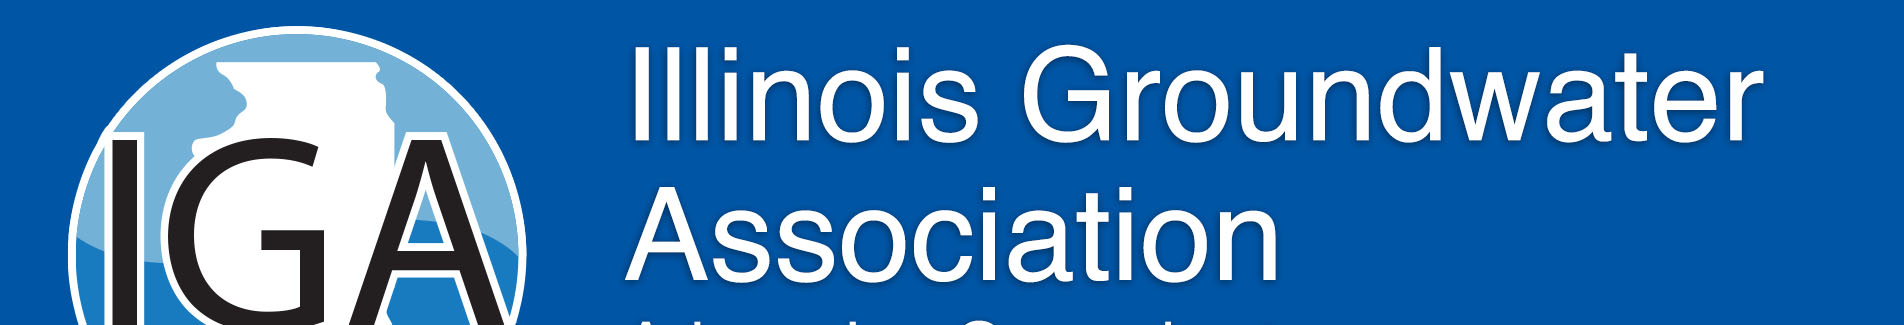 Illinois Groundwater Association